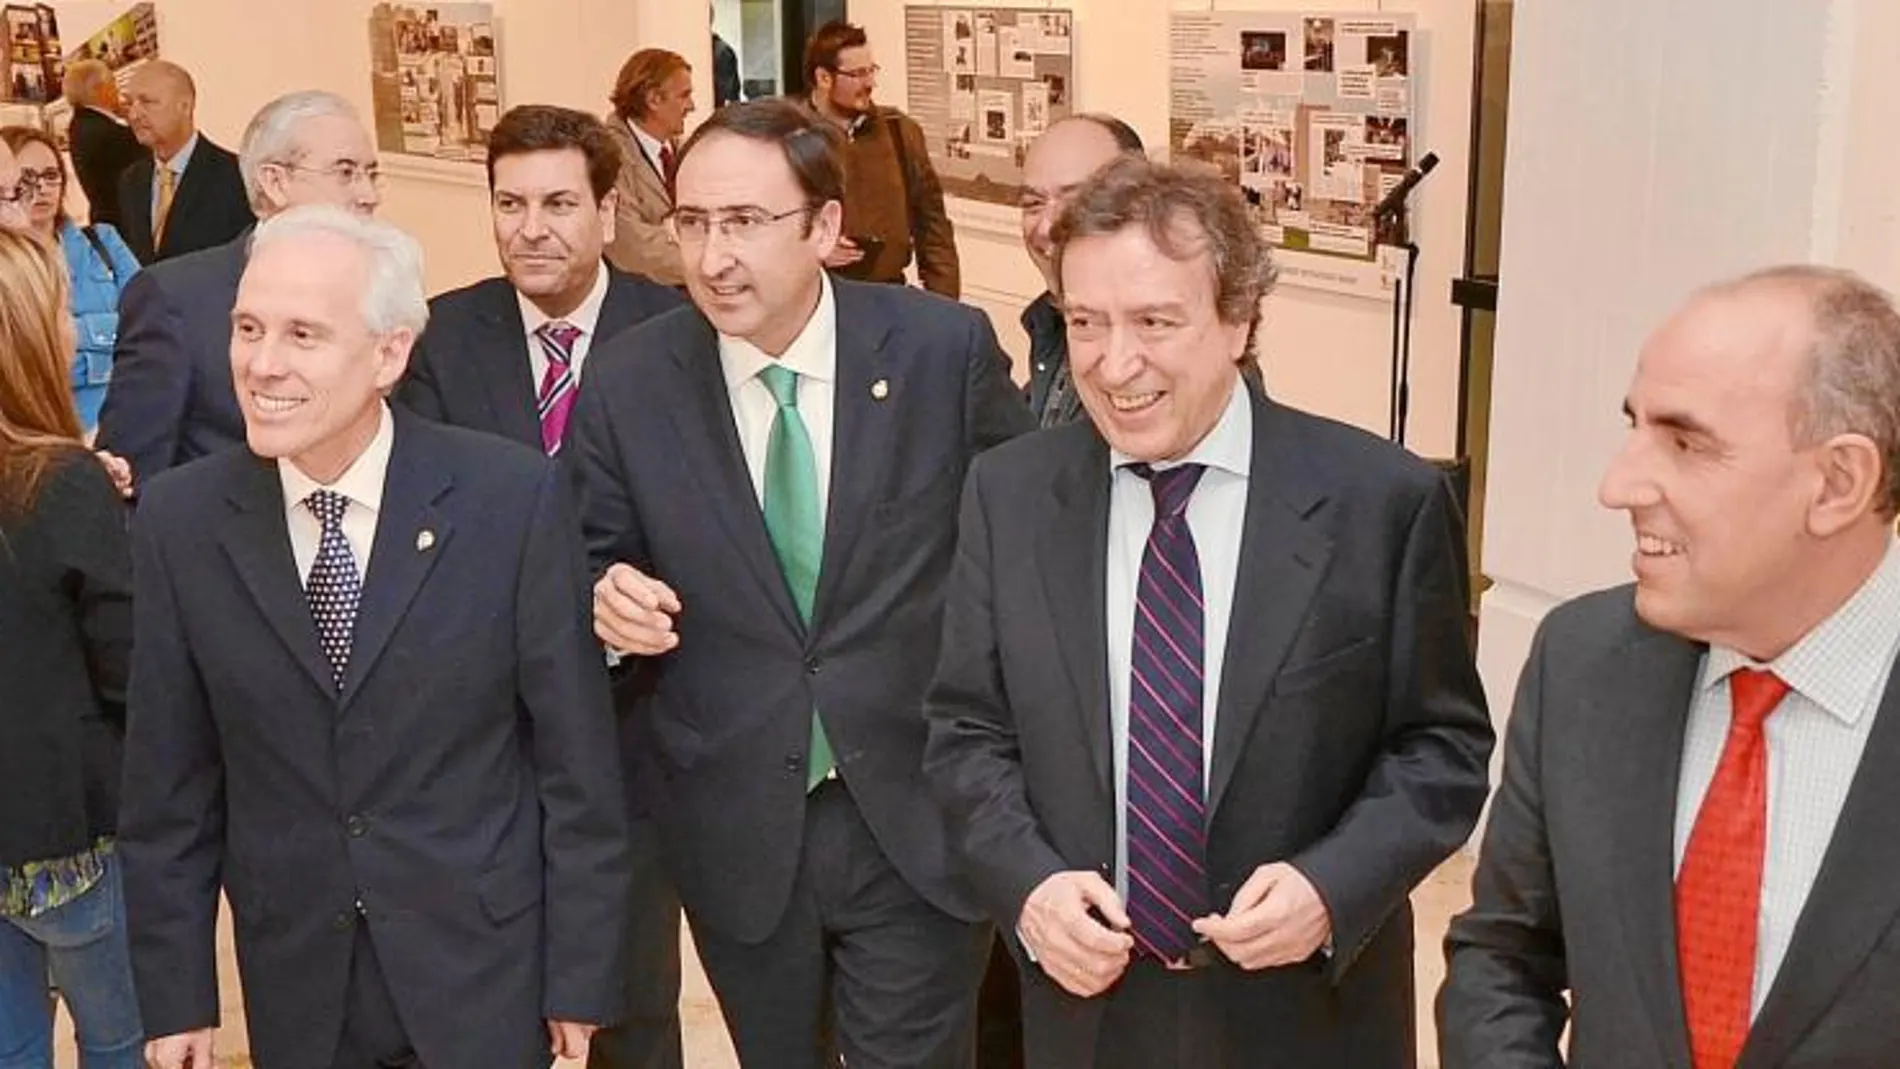 De Santiago-Juárez, a su llegada a la exposición en compañía de Alfonso Polanco, José María Hernández, Luis Domingo González y Fernández Carriedo